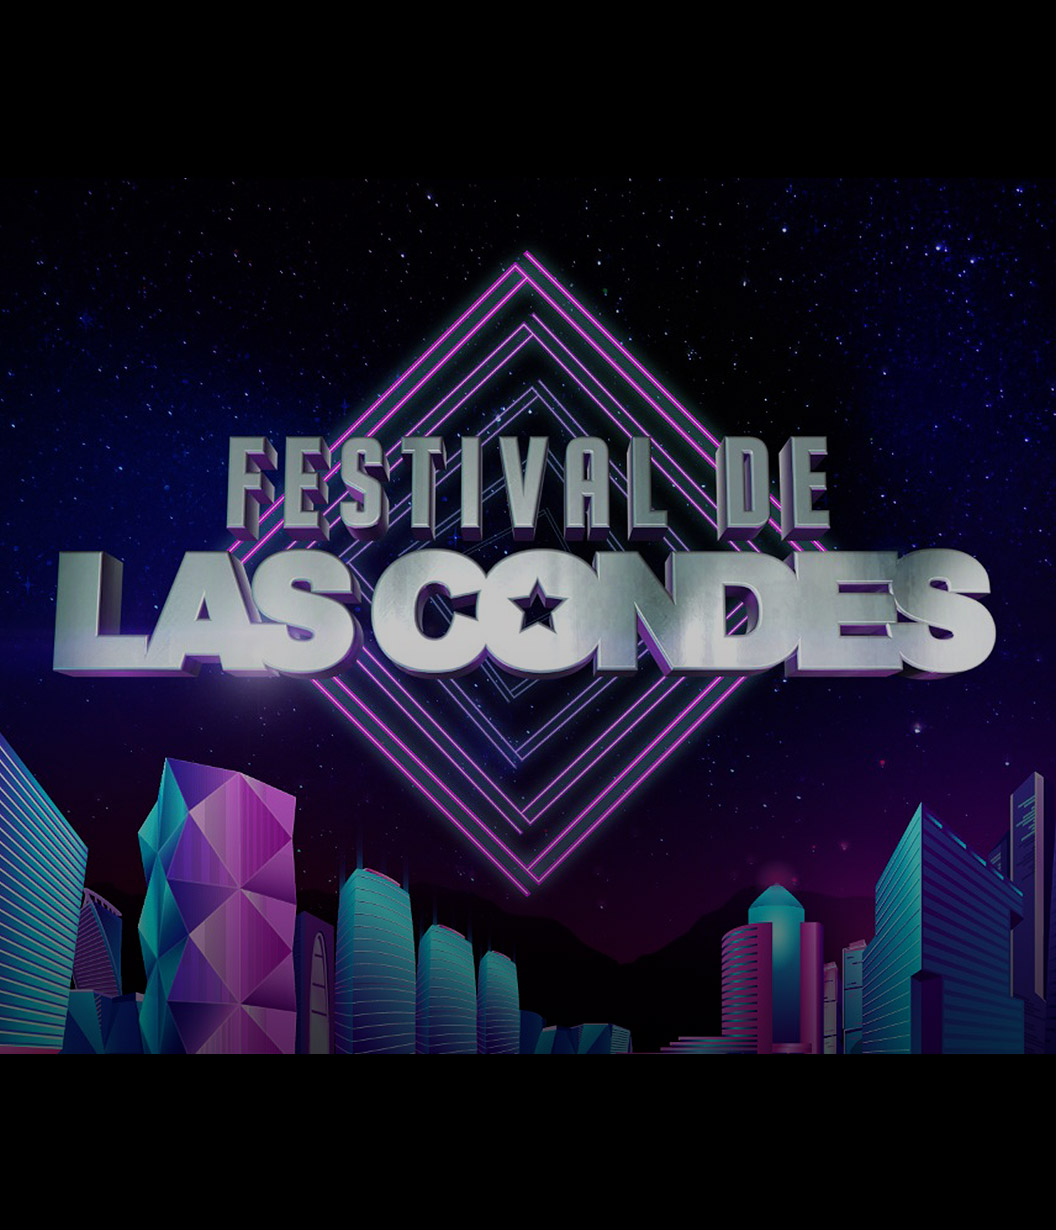 El Festival de Las Condes se toma el verano